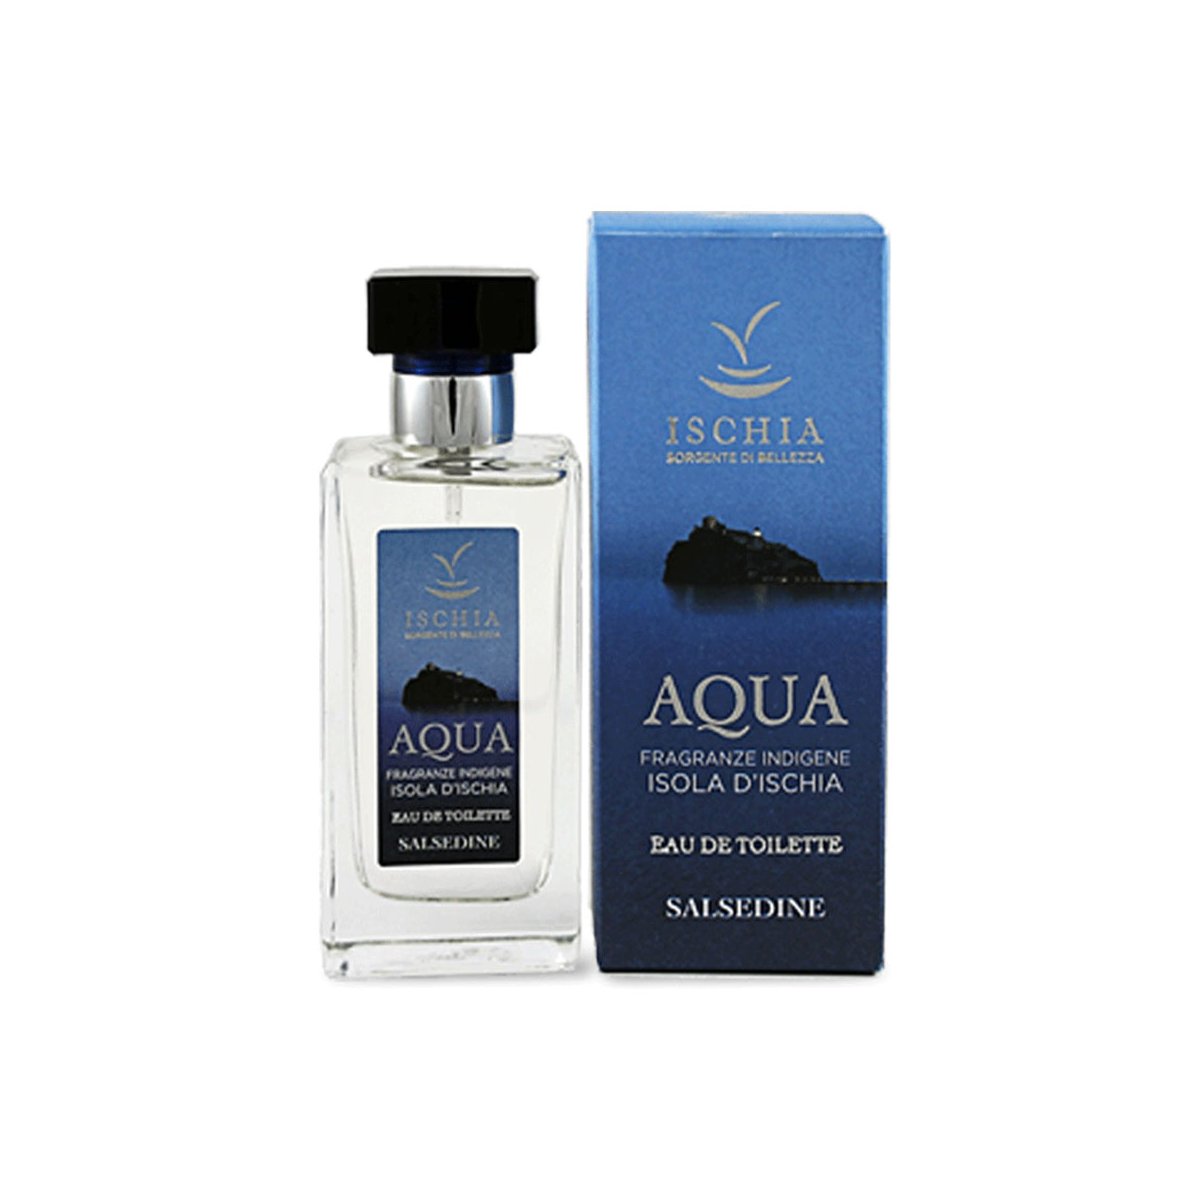 Eau de toielette "Aqua" Salsedine - Ischia Sorgente di bellezza 100 Ml